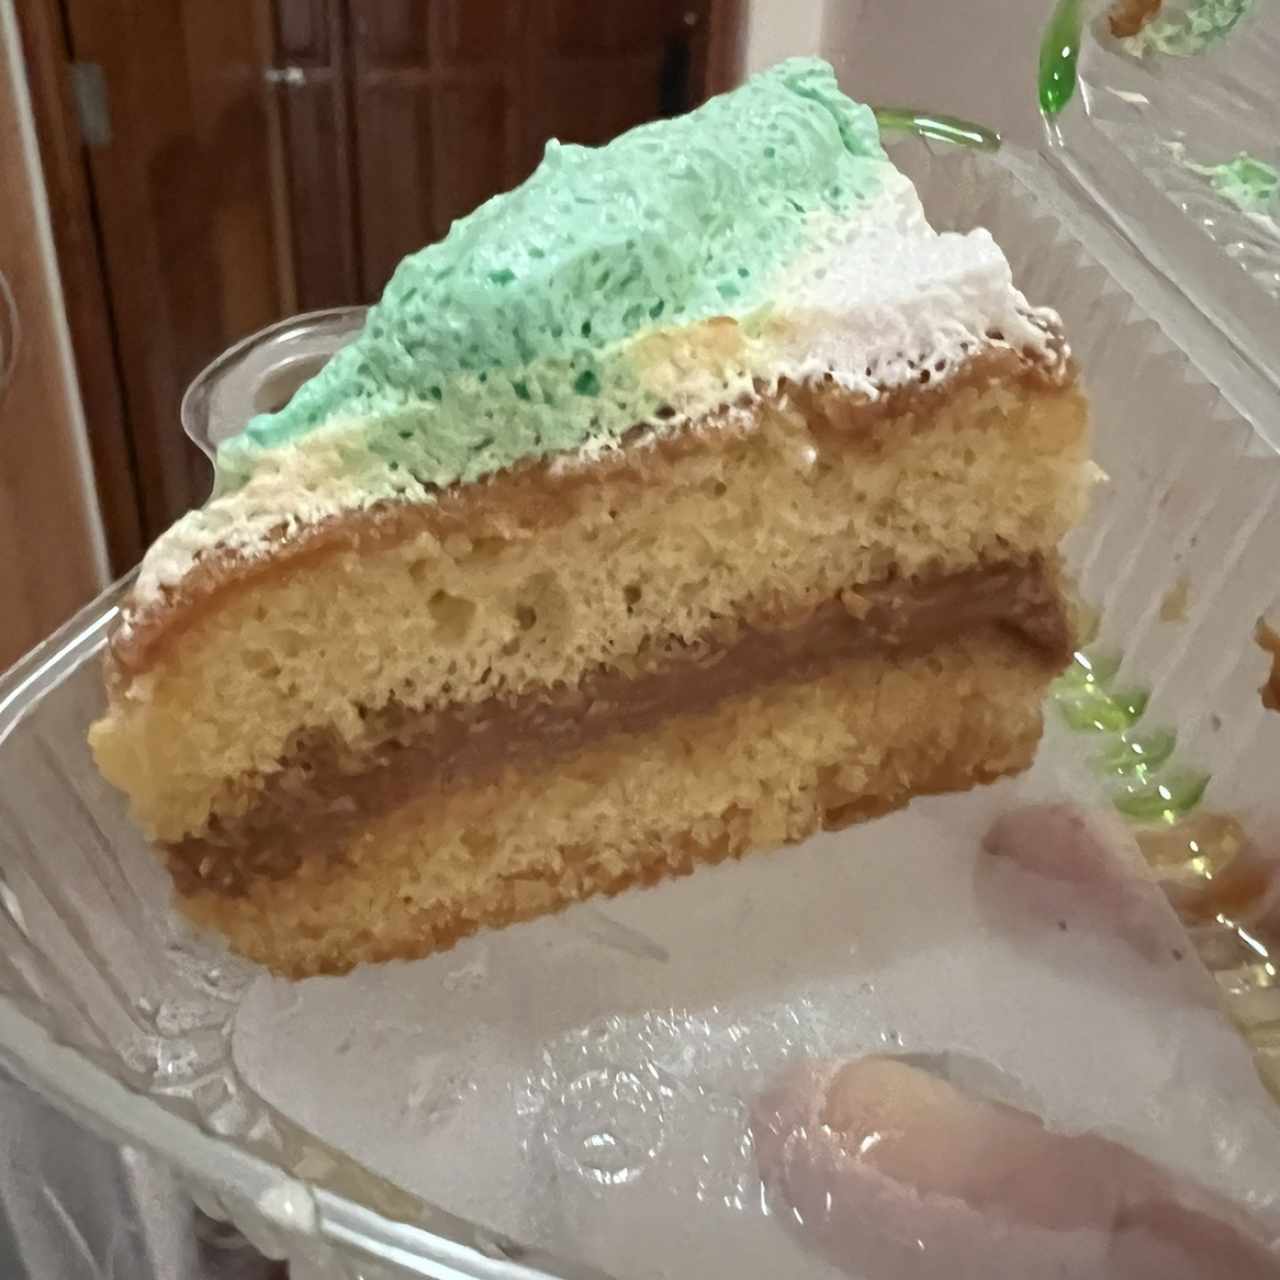 Dulcería - Cake tradicional 1